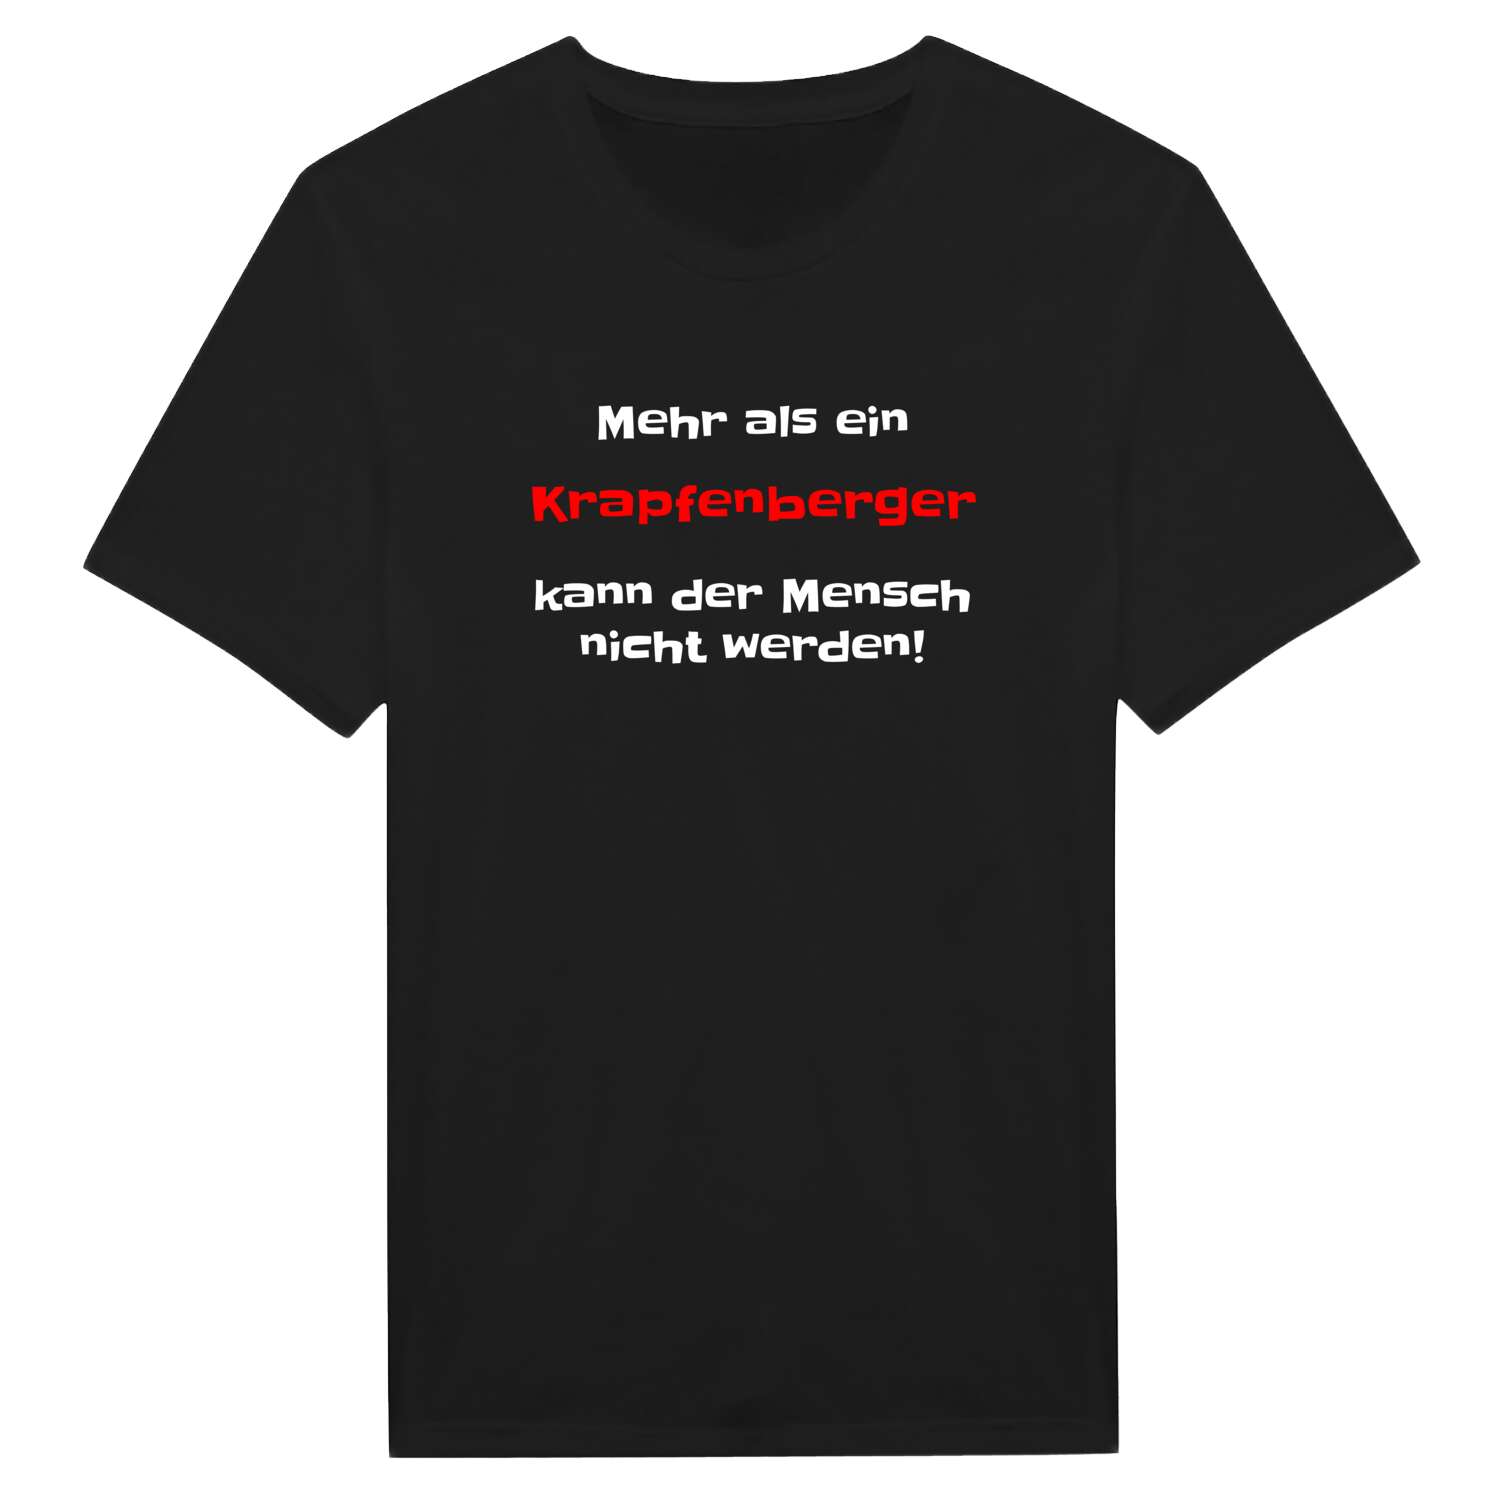 Krapfenberg T-Shirt »Mehr als ein«